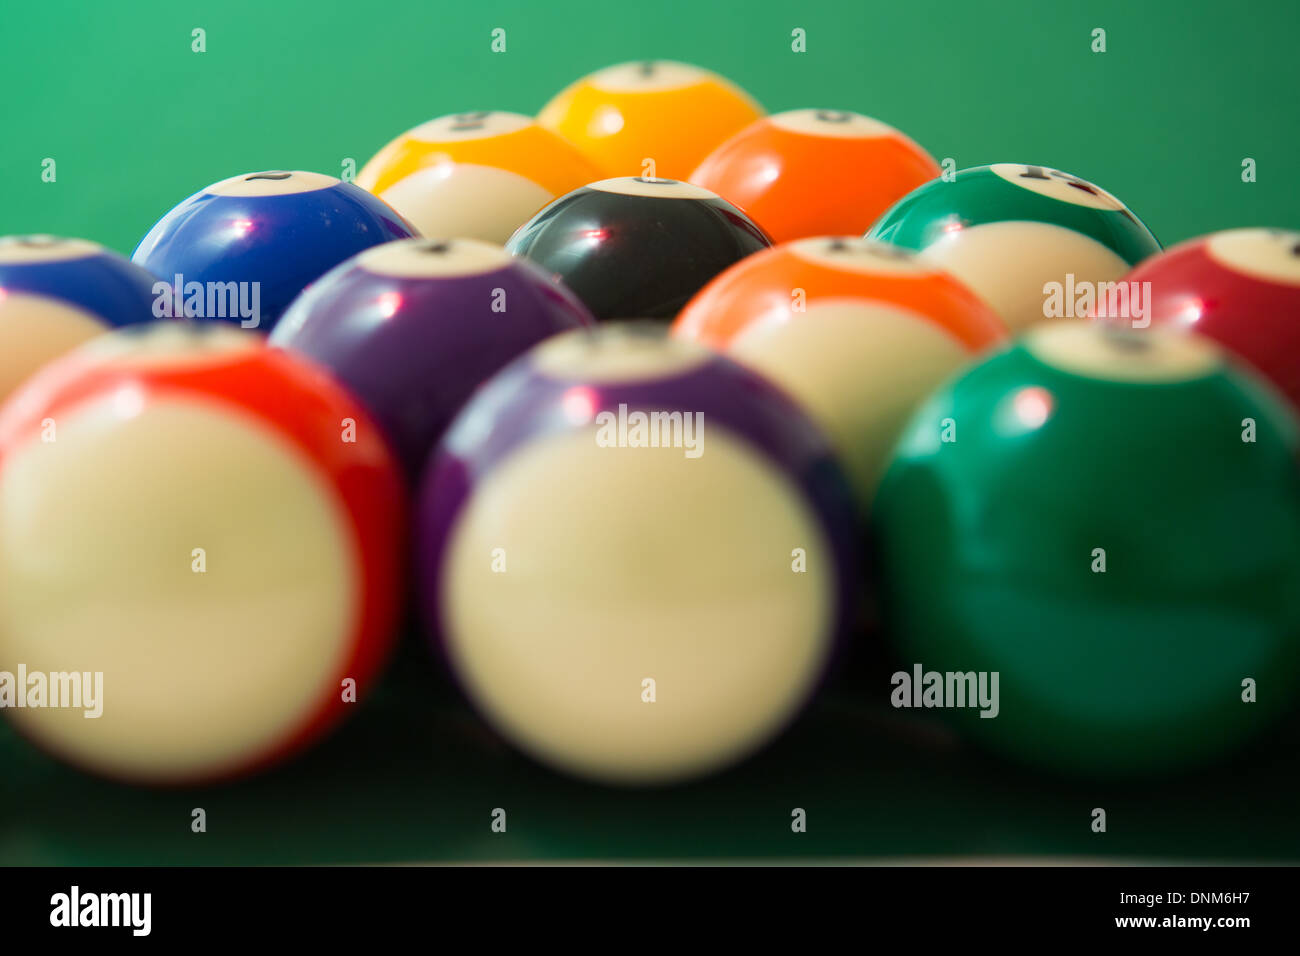 Pool balls arranged for break at start of game Stock Photo